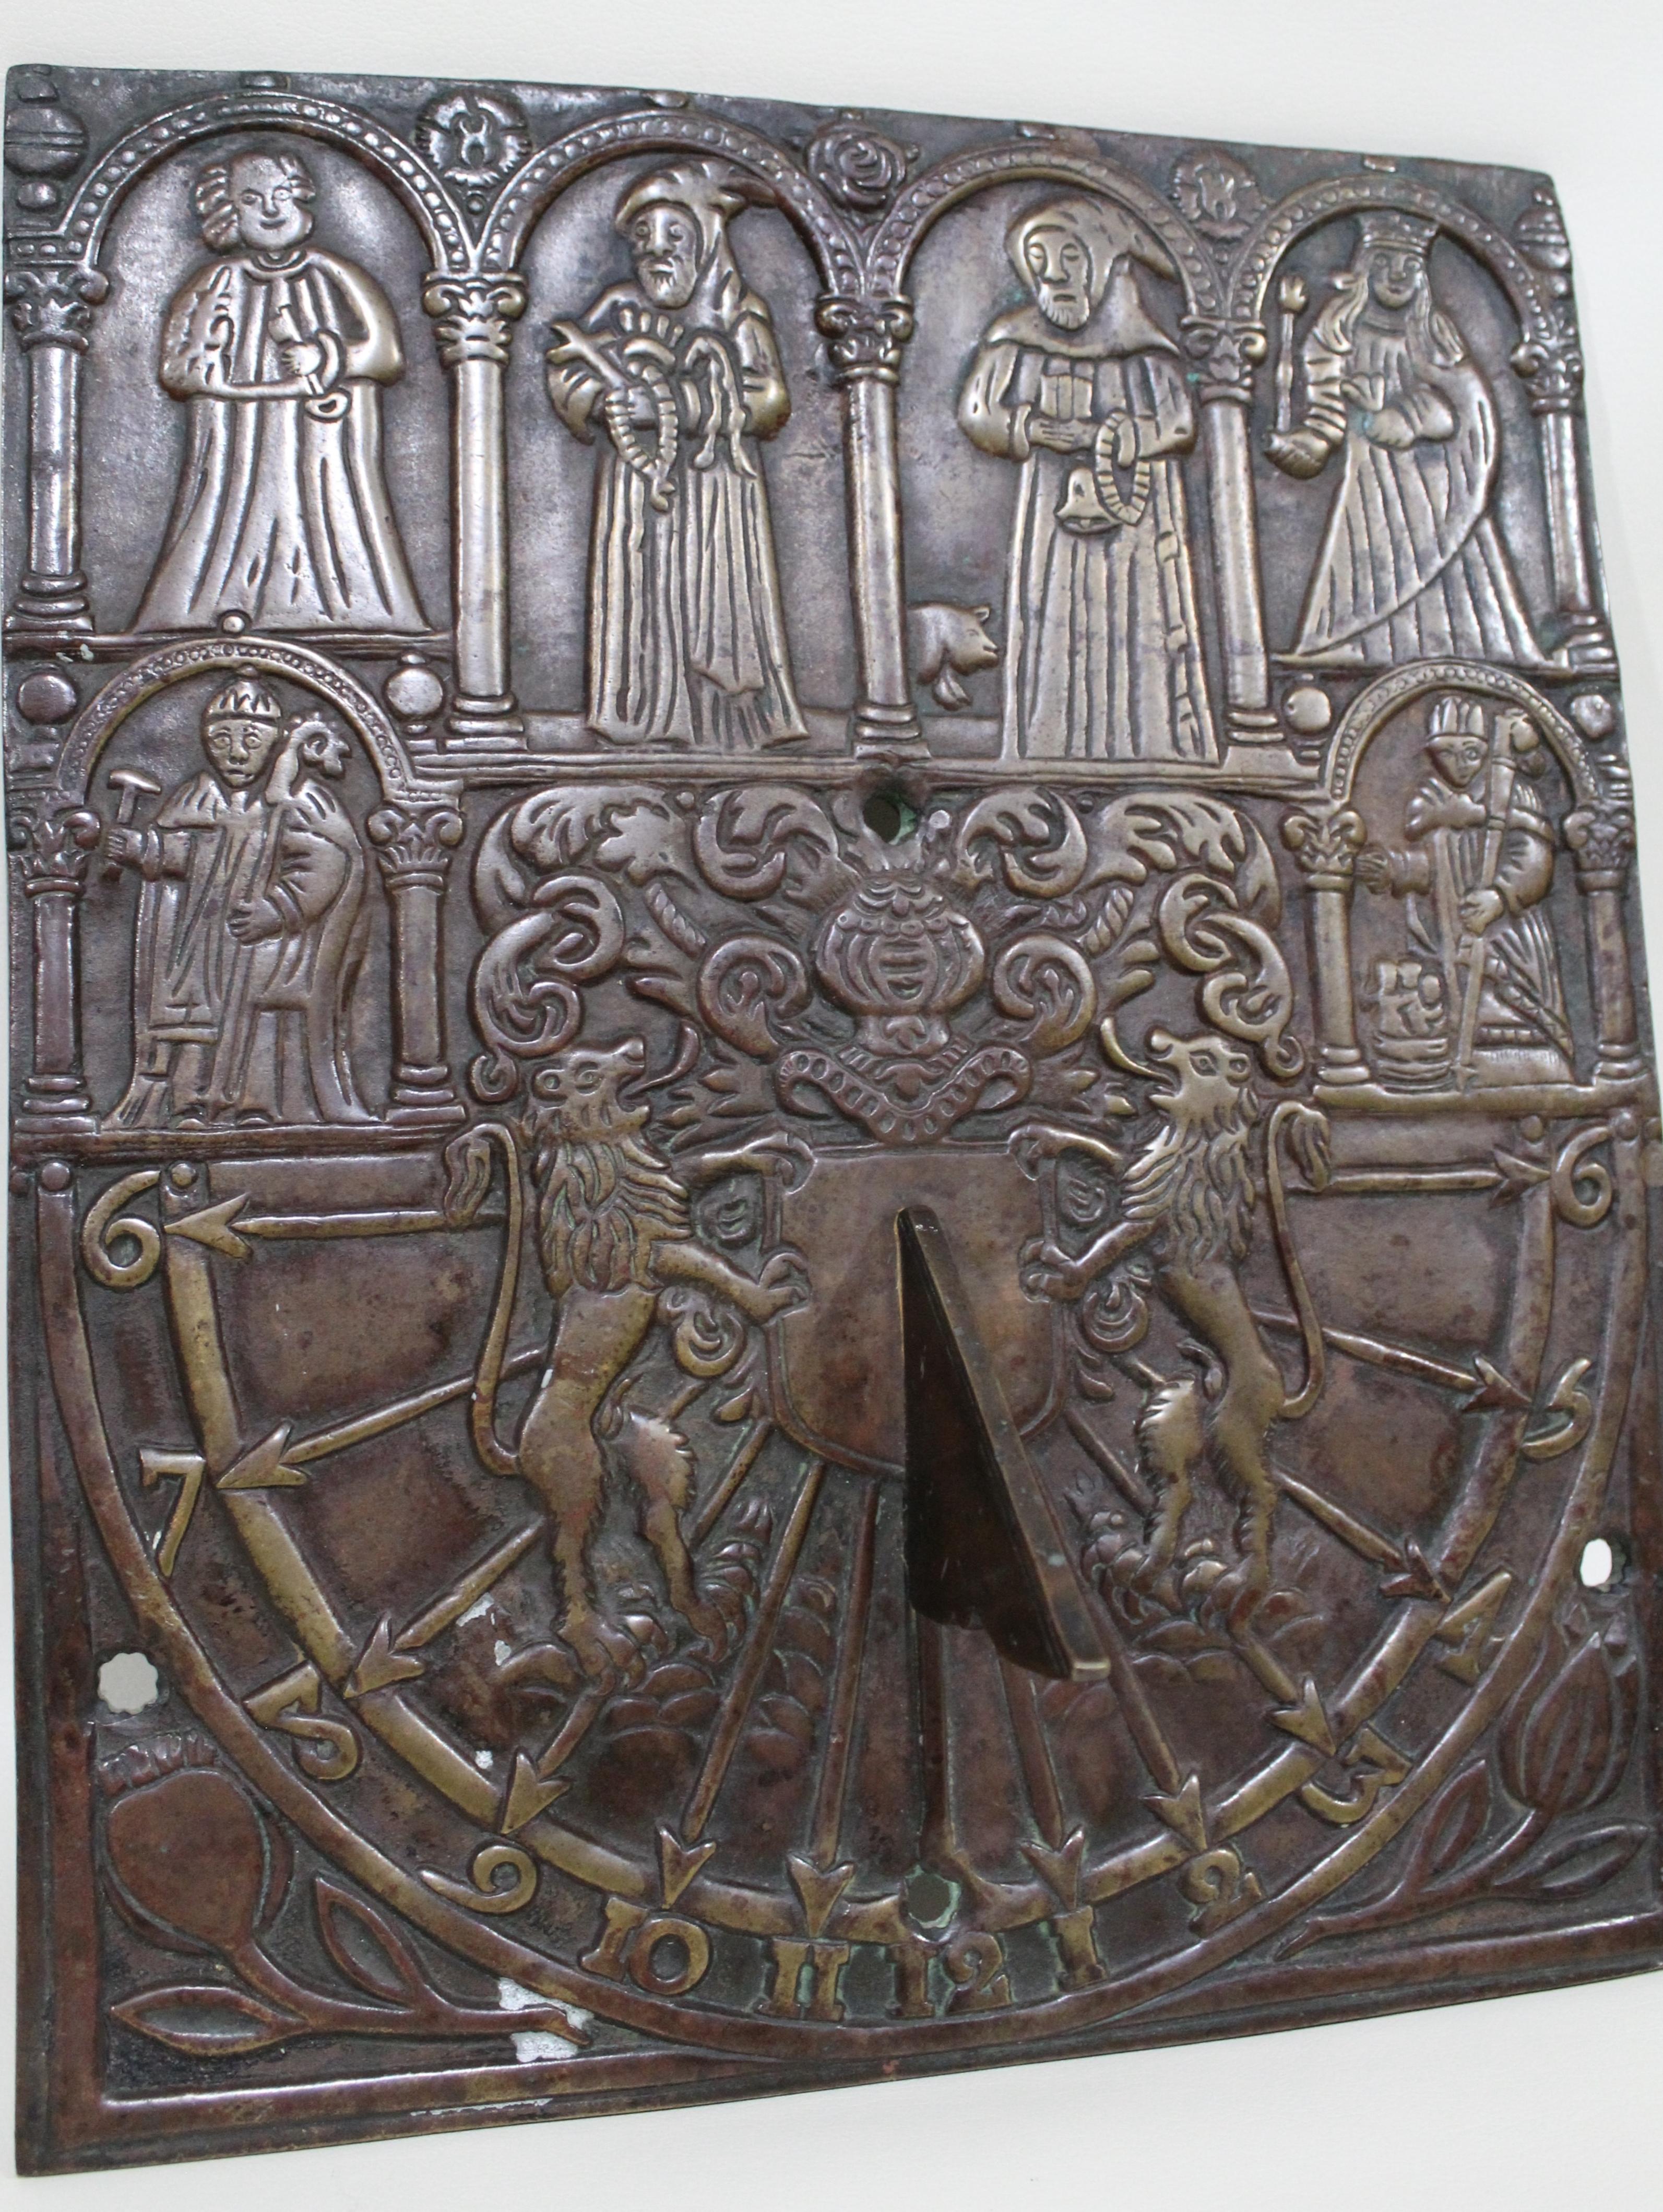 Diese vermutlich aus England stammende antike Sonnenuhr aus massiver Bronze ist kunstvoll mit einer Reihe von mittelalterlichen Figuren über dem oberen Teil gegossen und steht in der Fassade eines bogenförmigen Gebäudes. Darunter befinden sich zwei